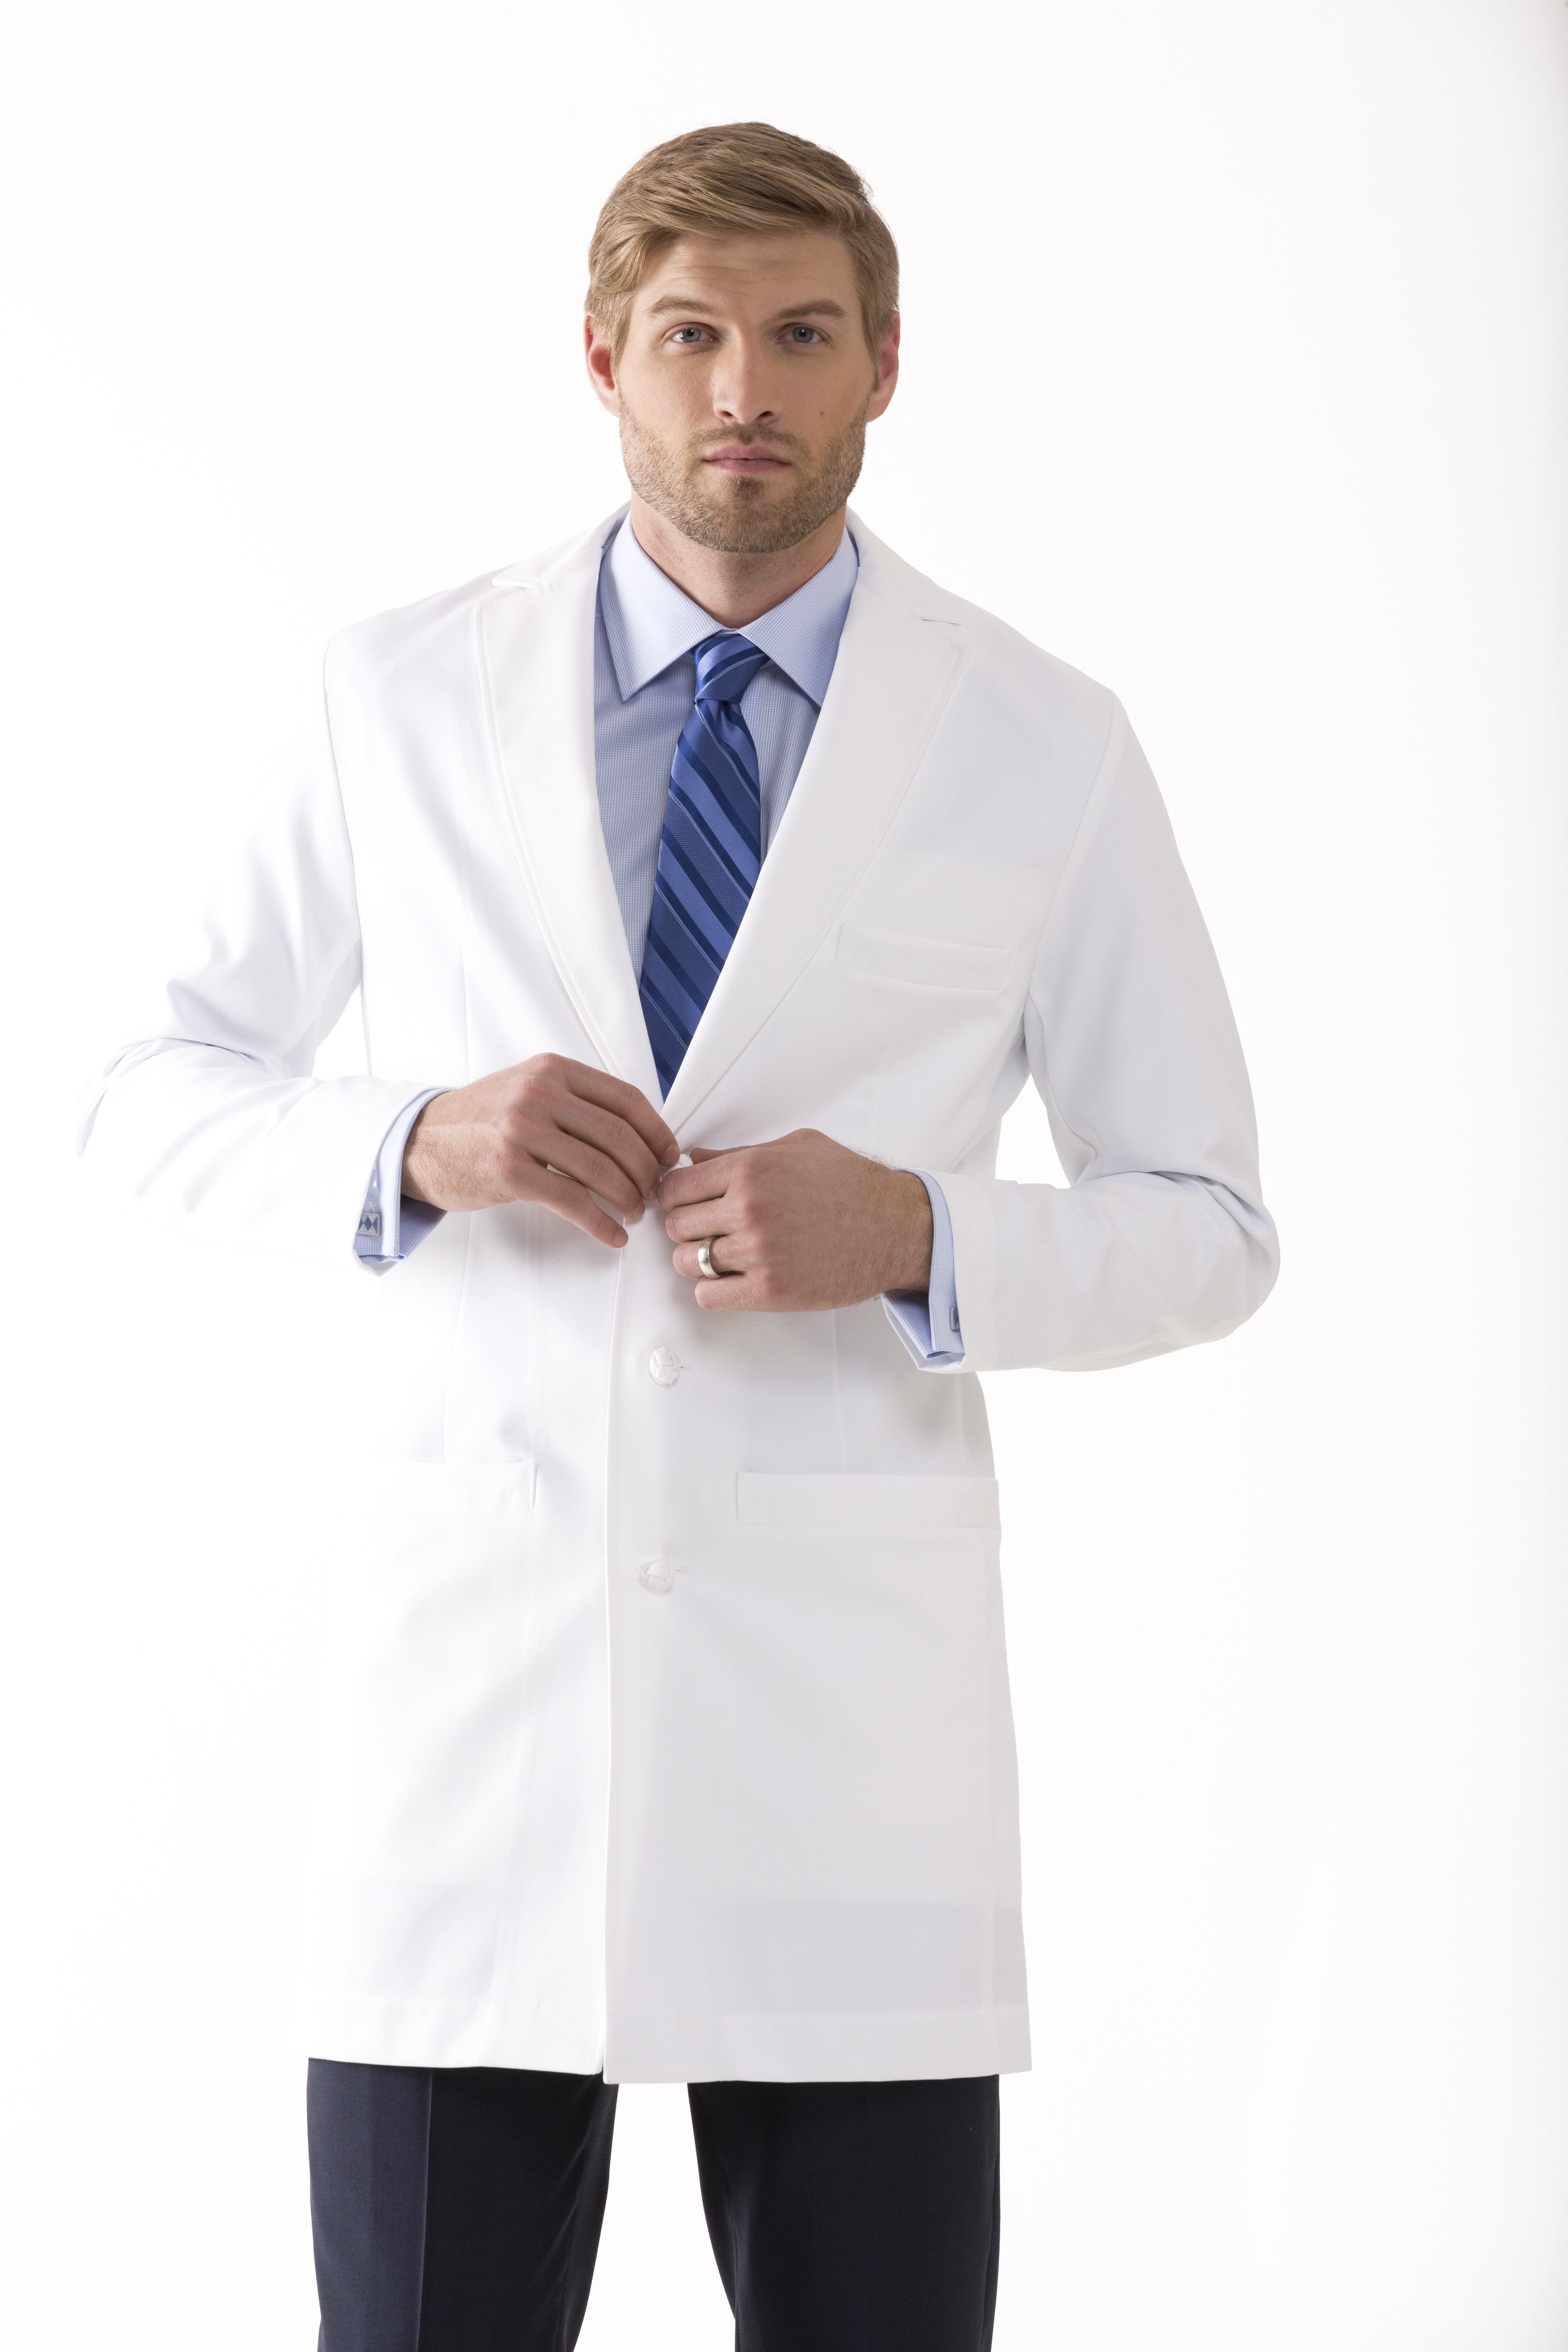 Men's Lab Coats | scrubsandlabcoats